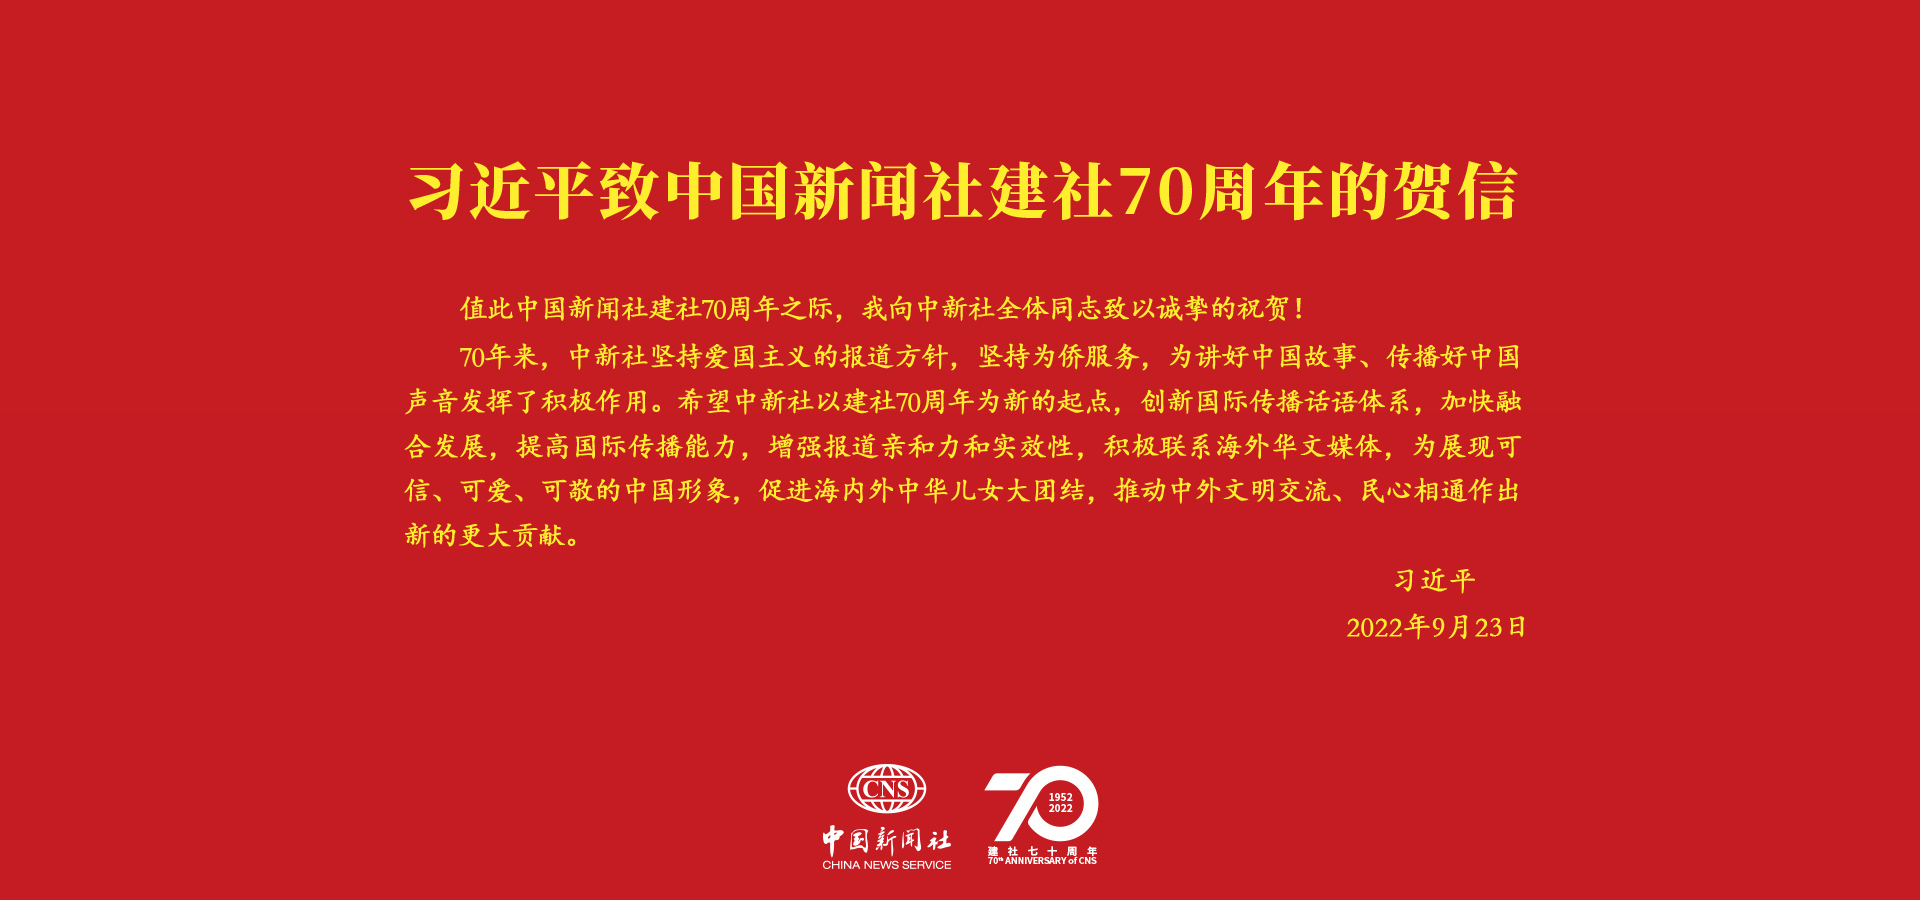 习言道｜“创新国际传播话语体系”<p>    在中国新闻社建社70周年之际，中共中央总书记、国家主席、中央军委主席习近平发来贺信，向中新社全体同志致以诚挚的祝贺。<p>